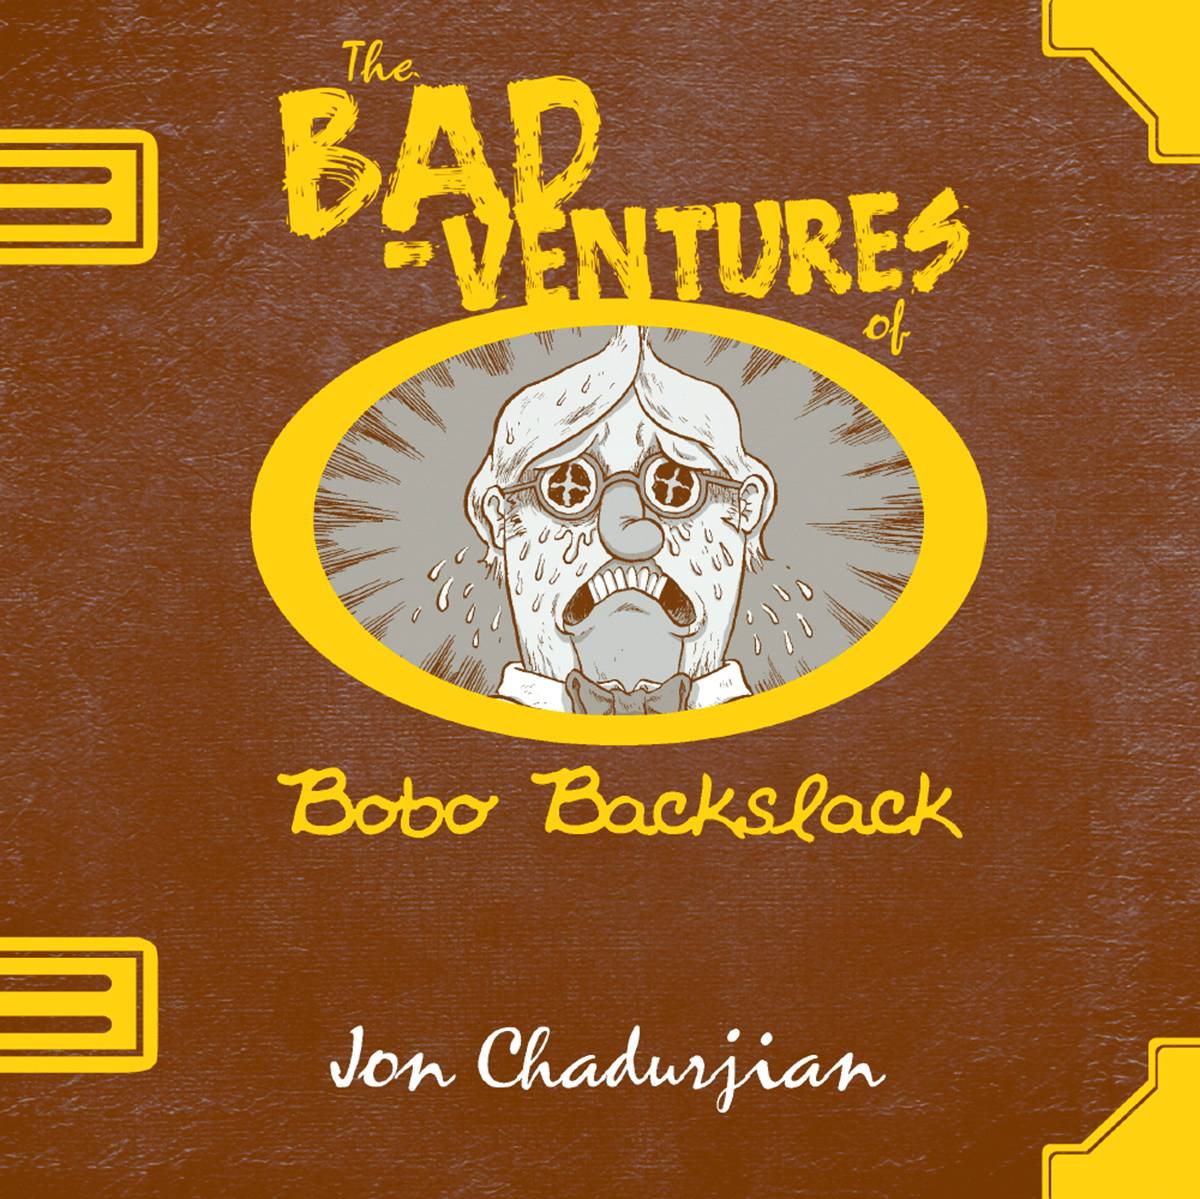 Bad Ventures Bobo Backslack Graphic Novel